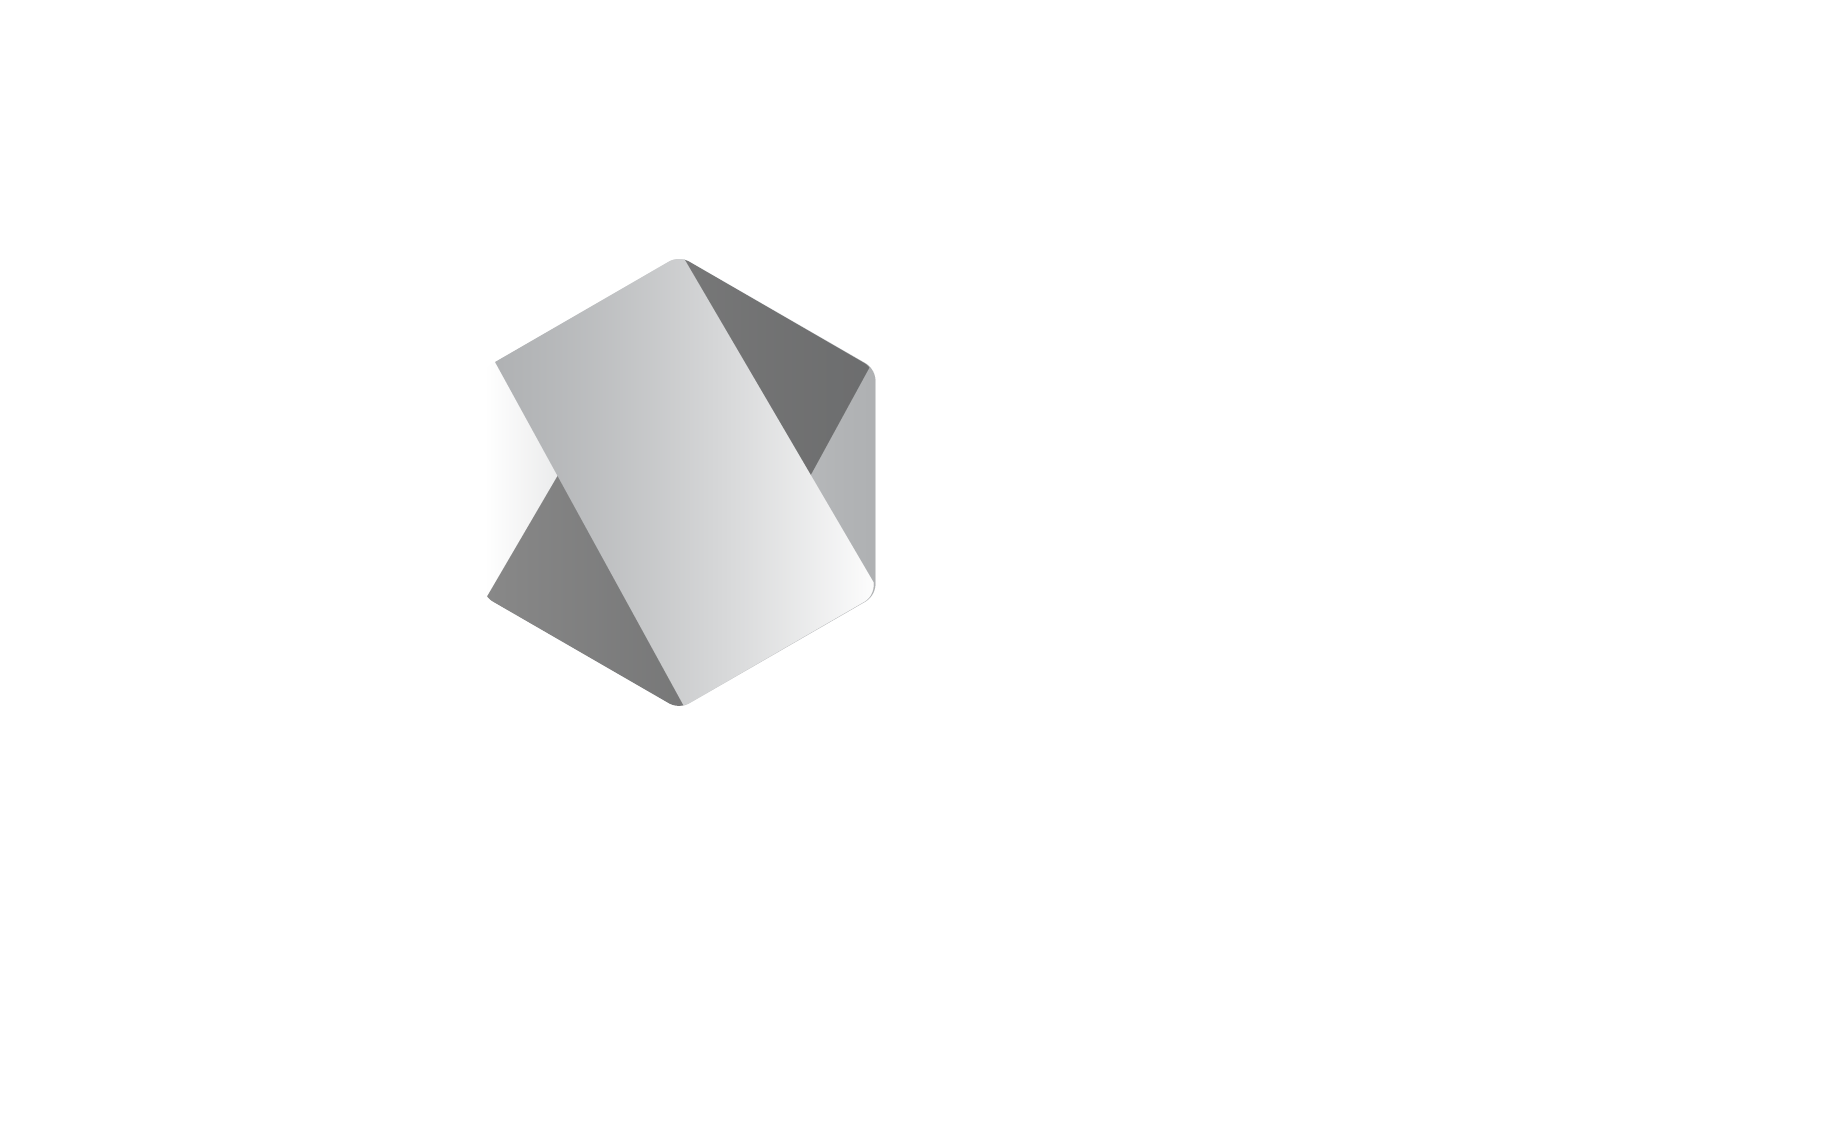 Node.js on dark background